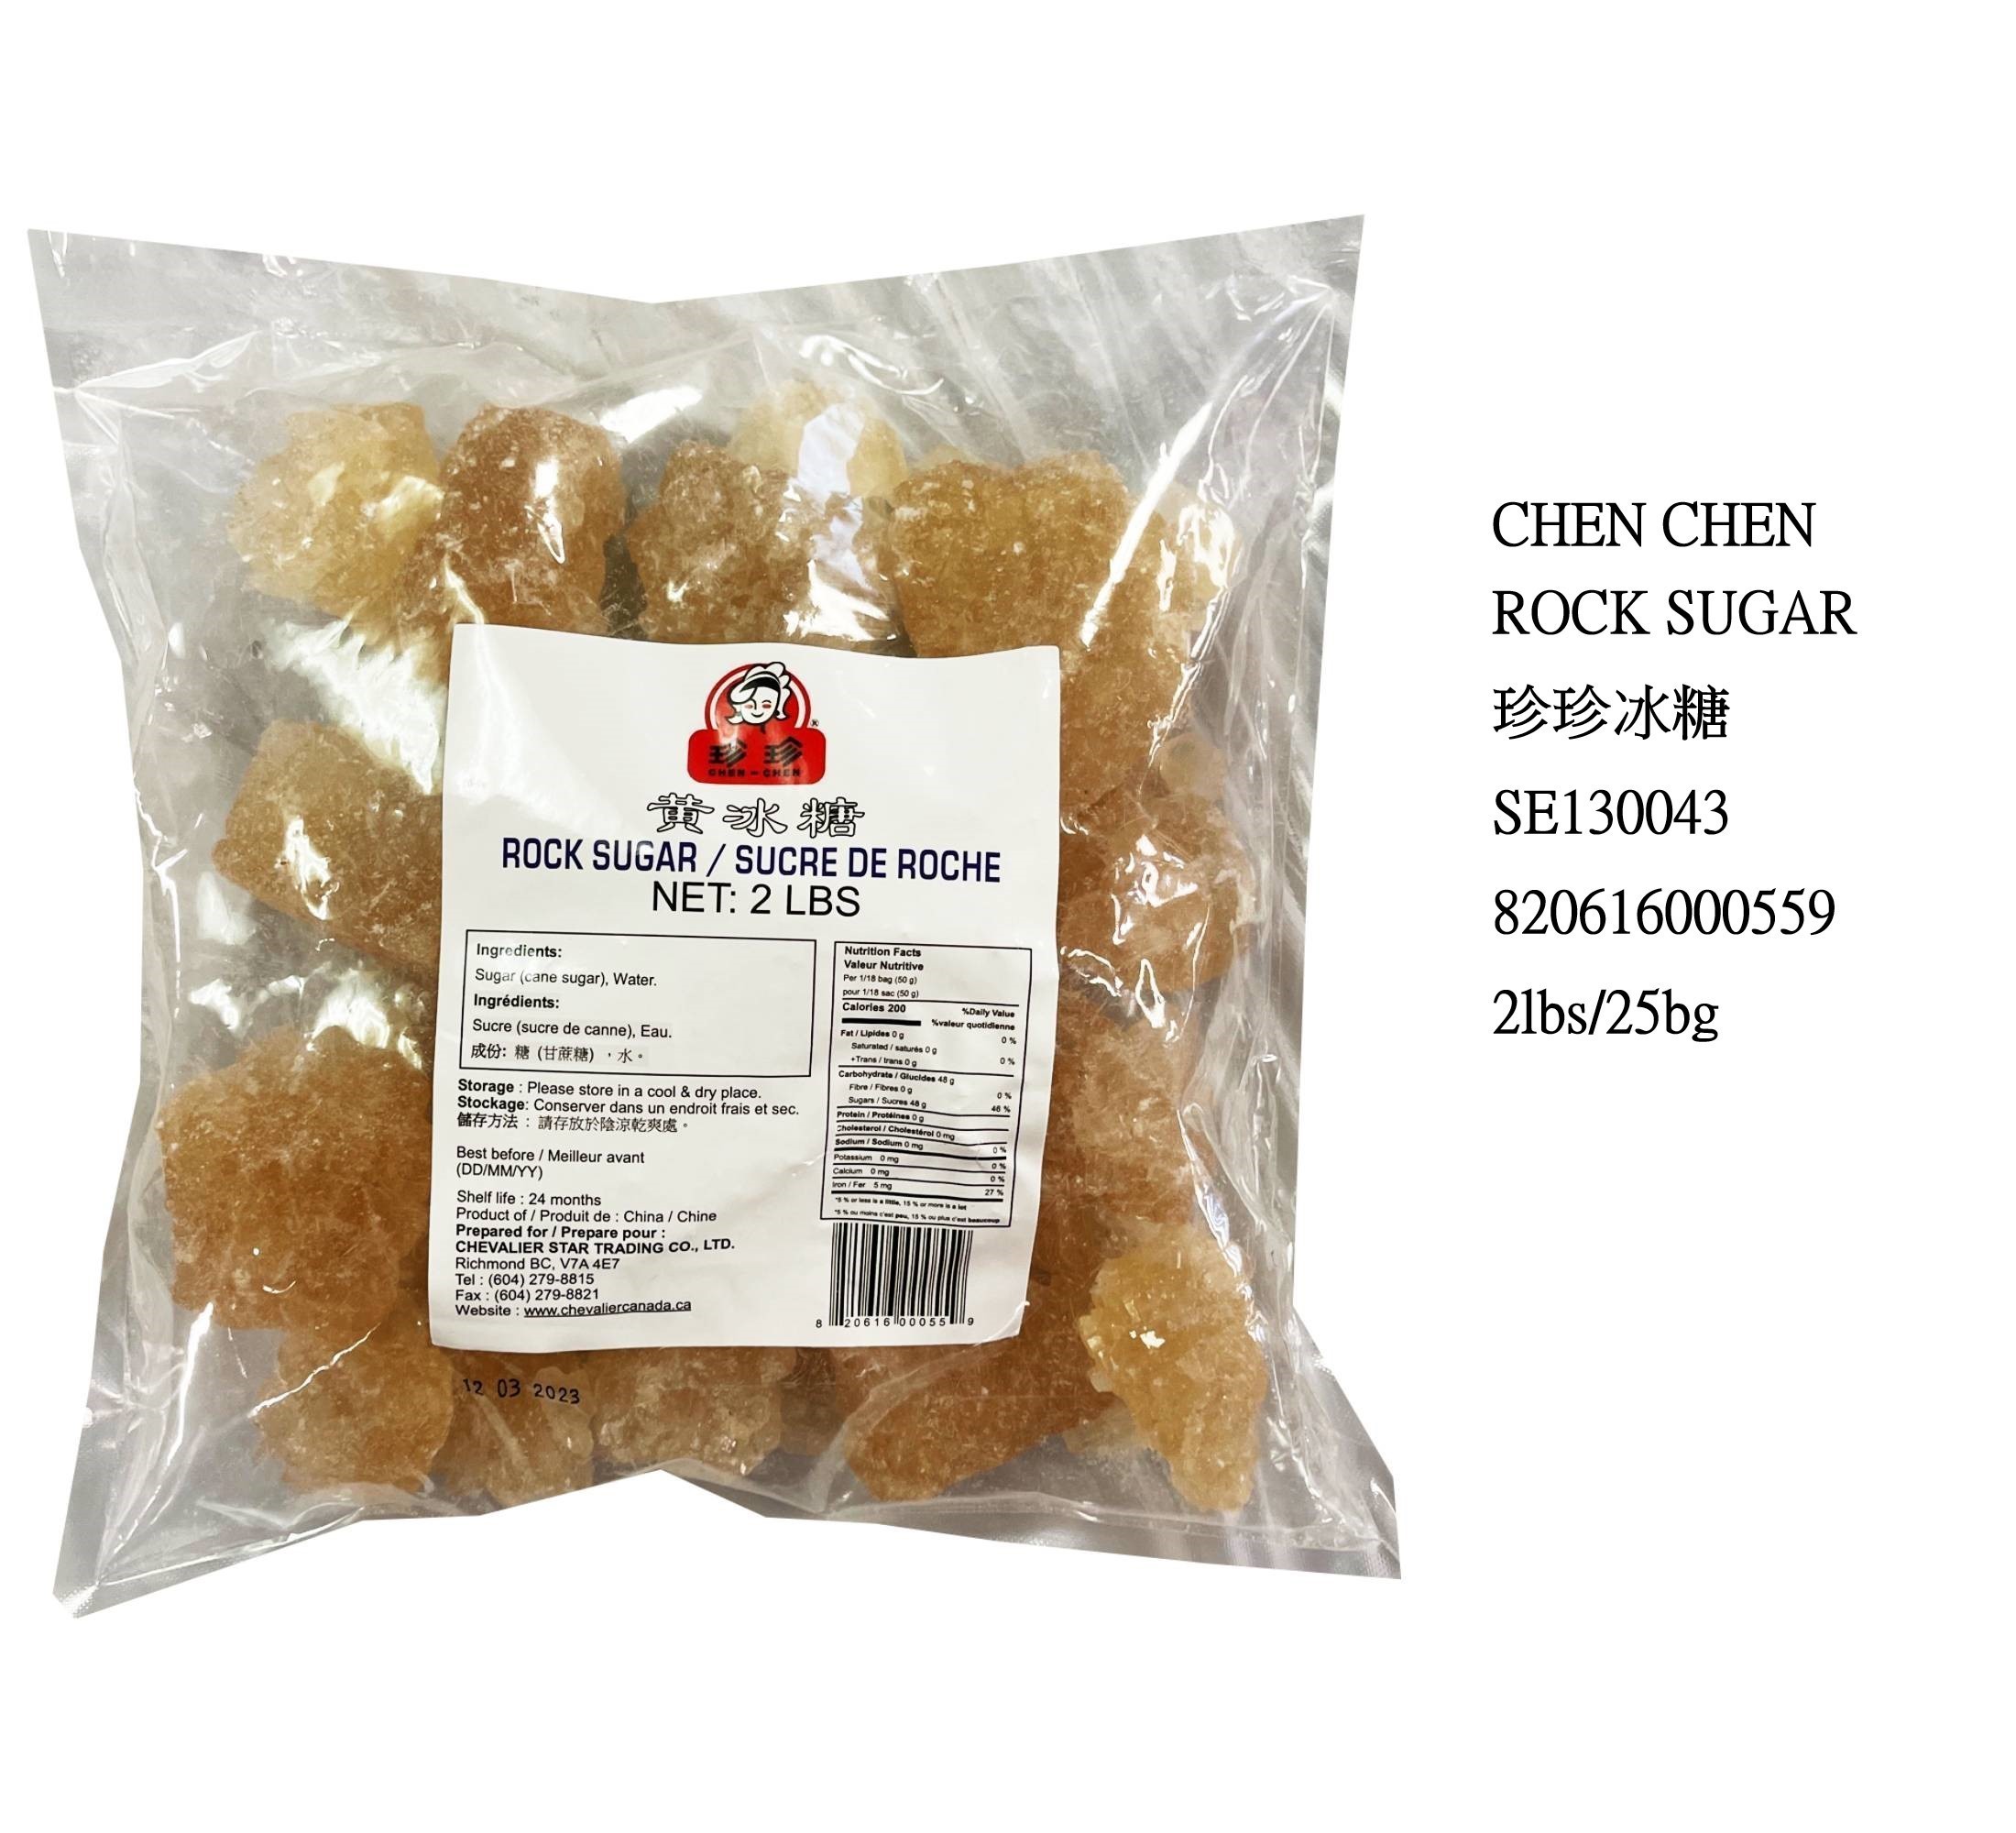 CHEN CHEN ROCK SUGAR (2 lbs) SE130043